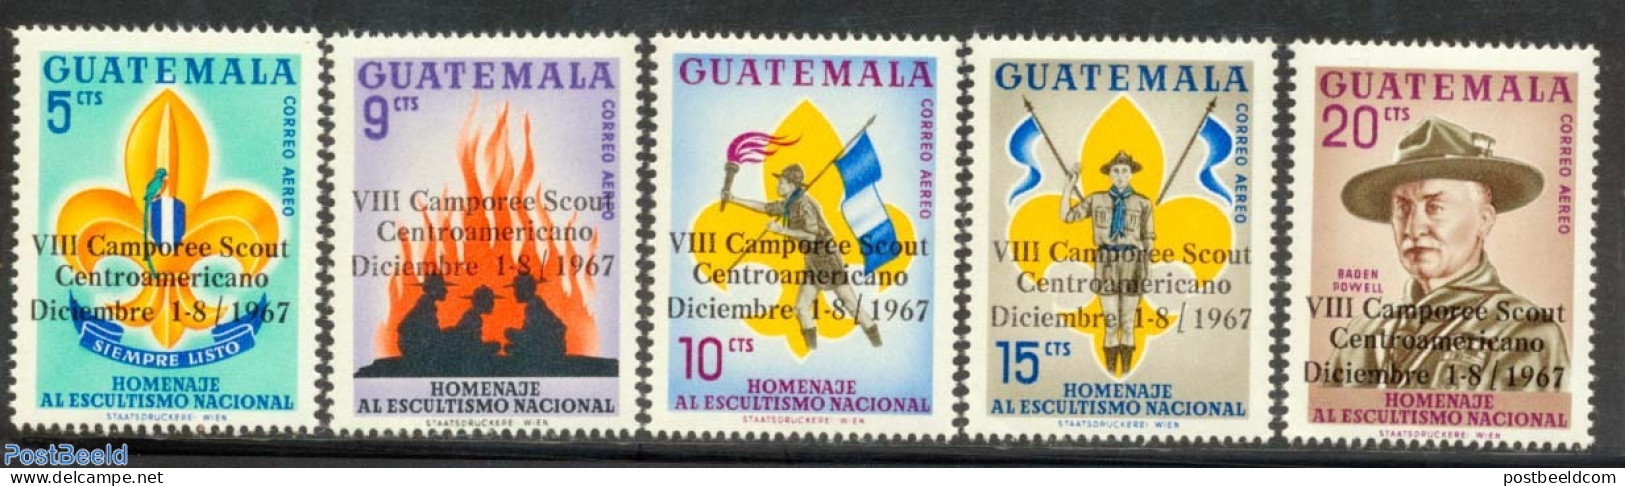 Guatemala 1967 Scouting 5v, Mint NH, Sport - Scouting - Guatemala